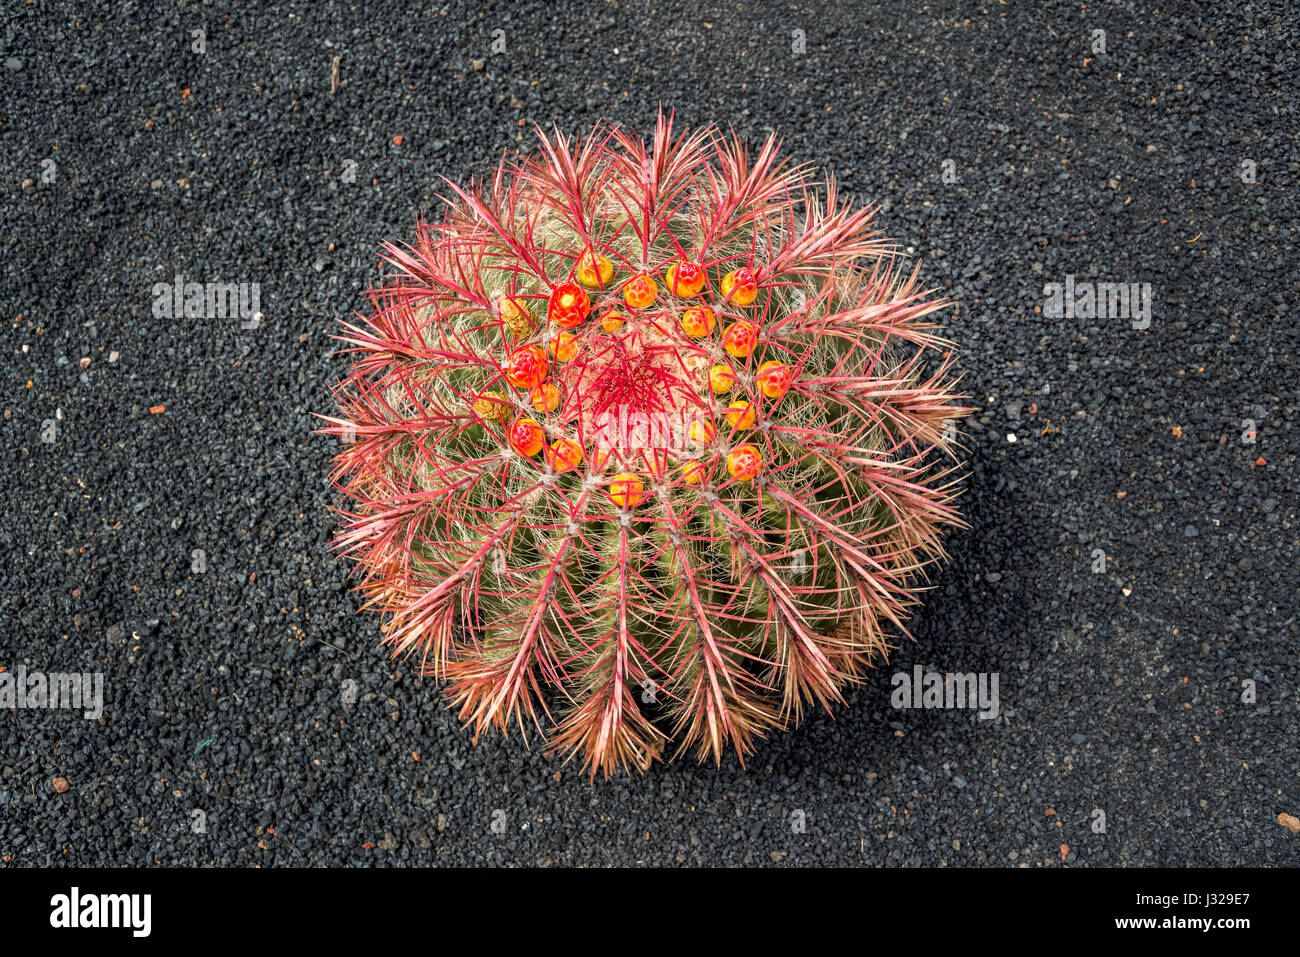 Arizona barrel cactus (Ferocactus wislizeni) con fiori arancione, nero terreno lavico background in Lanzarote Foto Stock